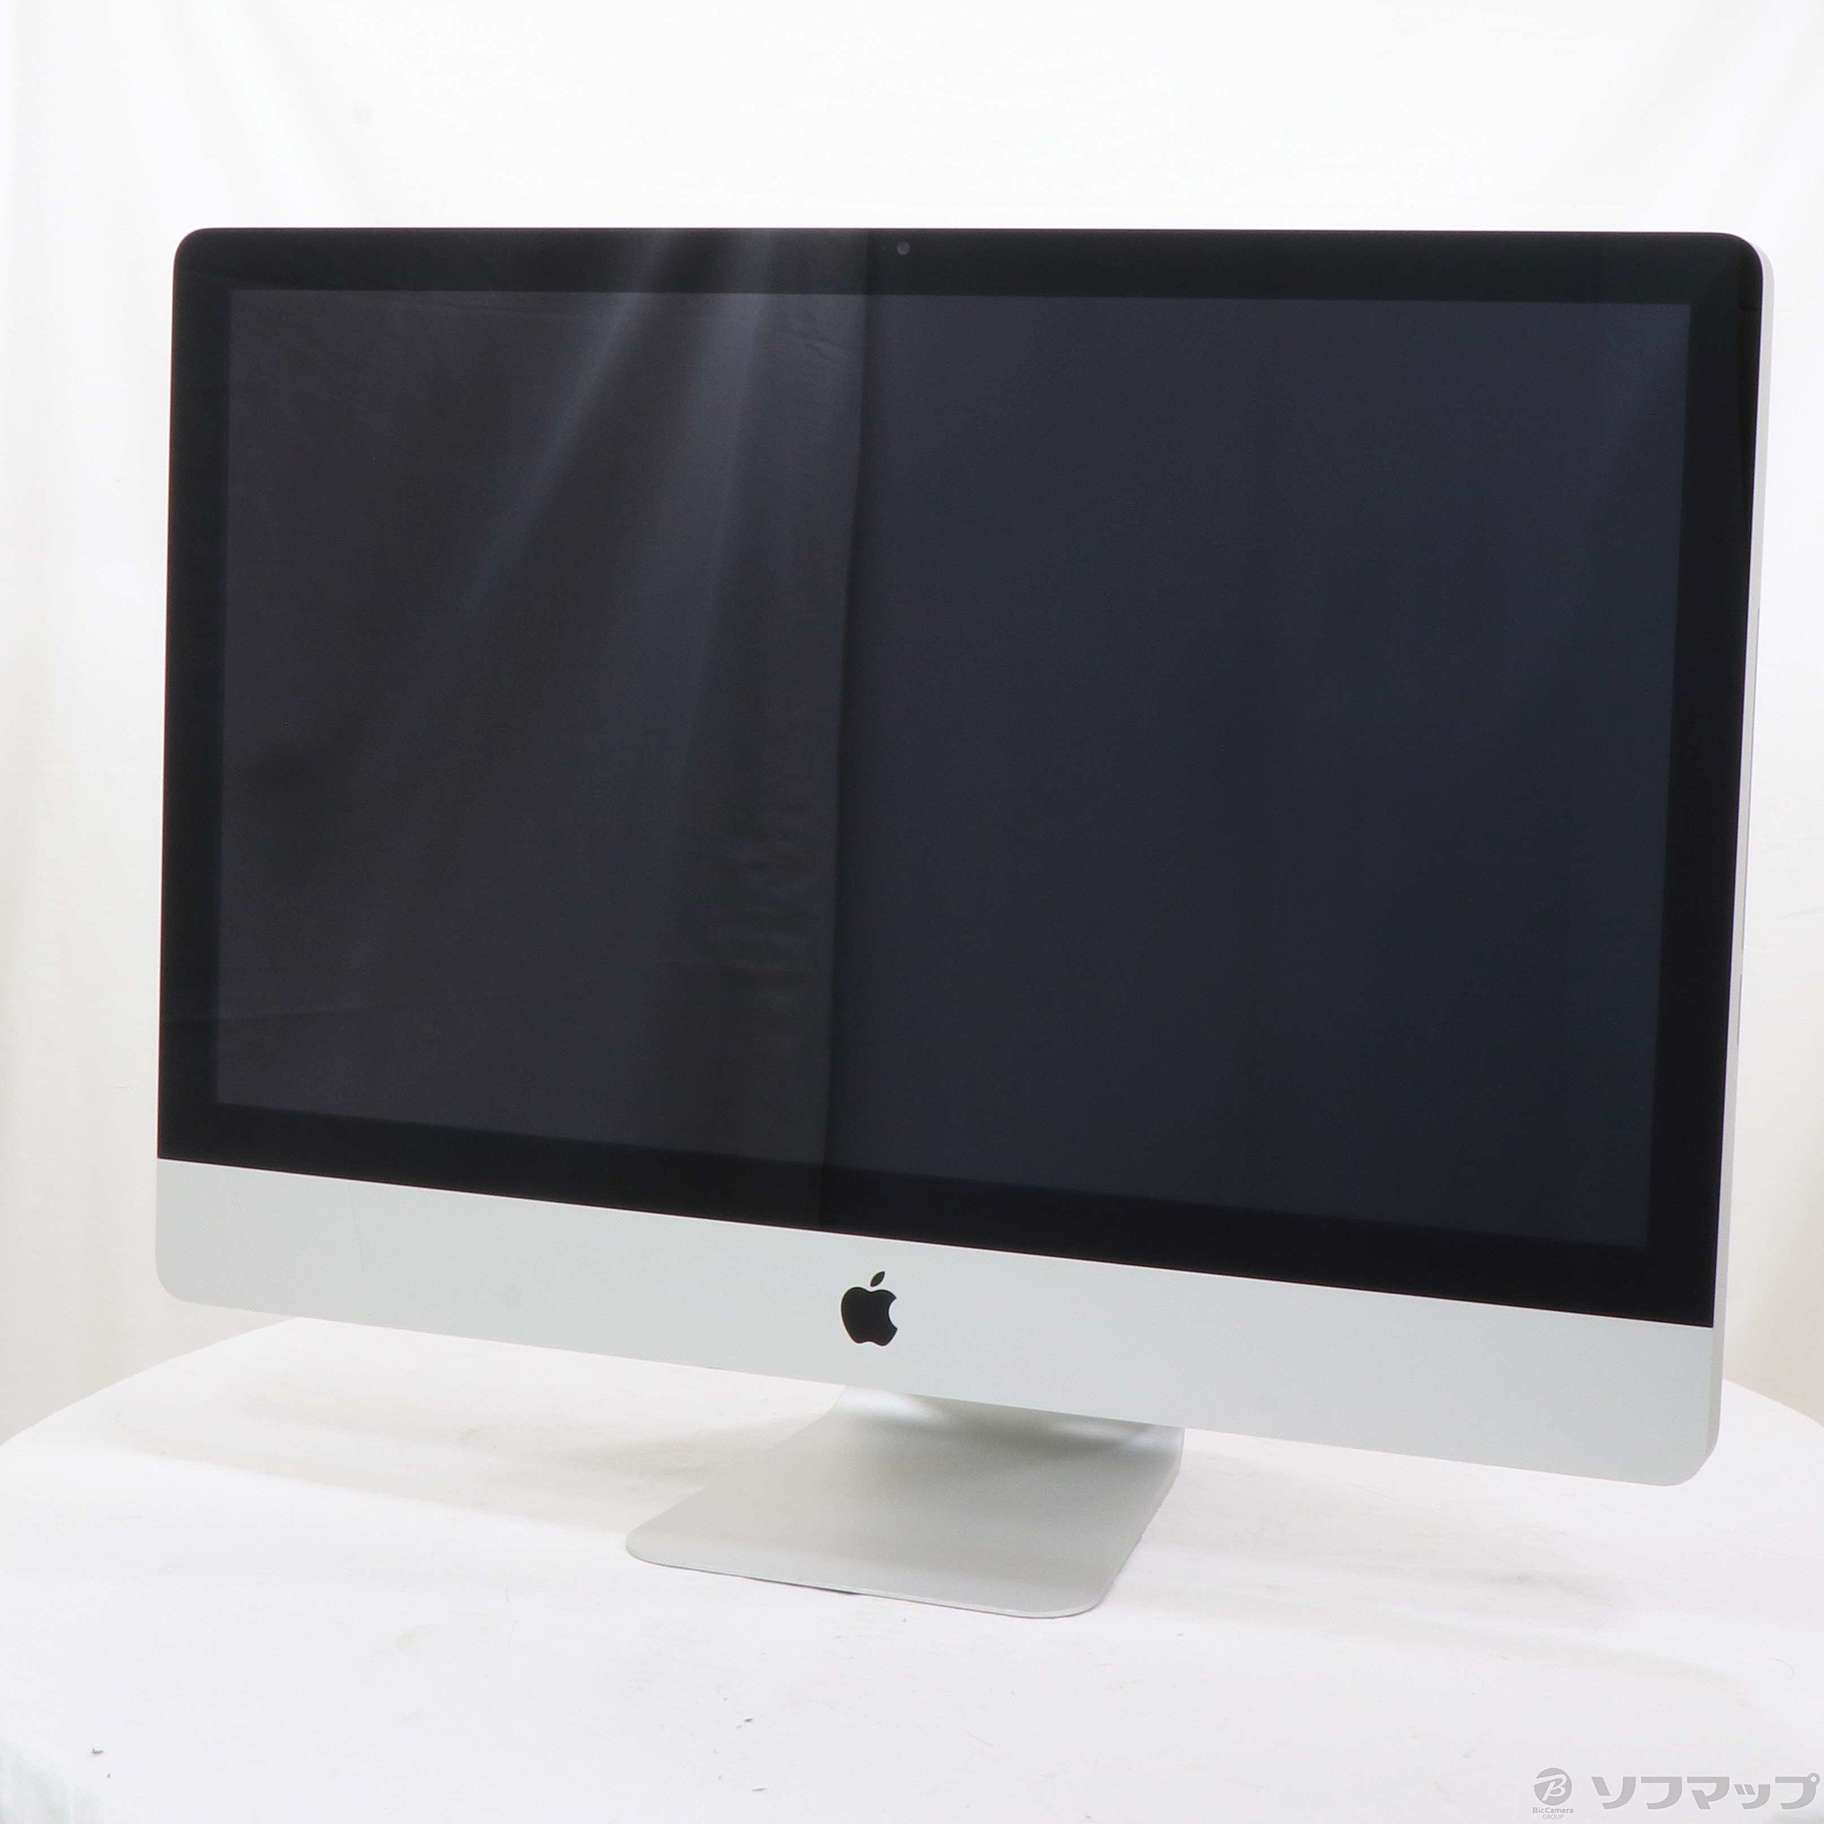 Apple iMac 27インチ (Mid 2011) - Macデスクトップ